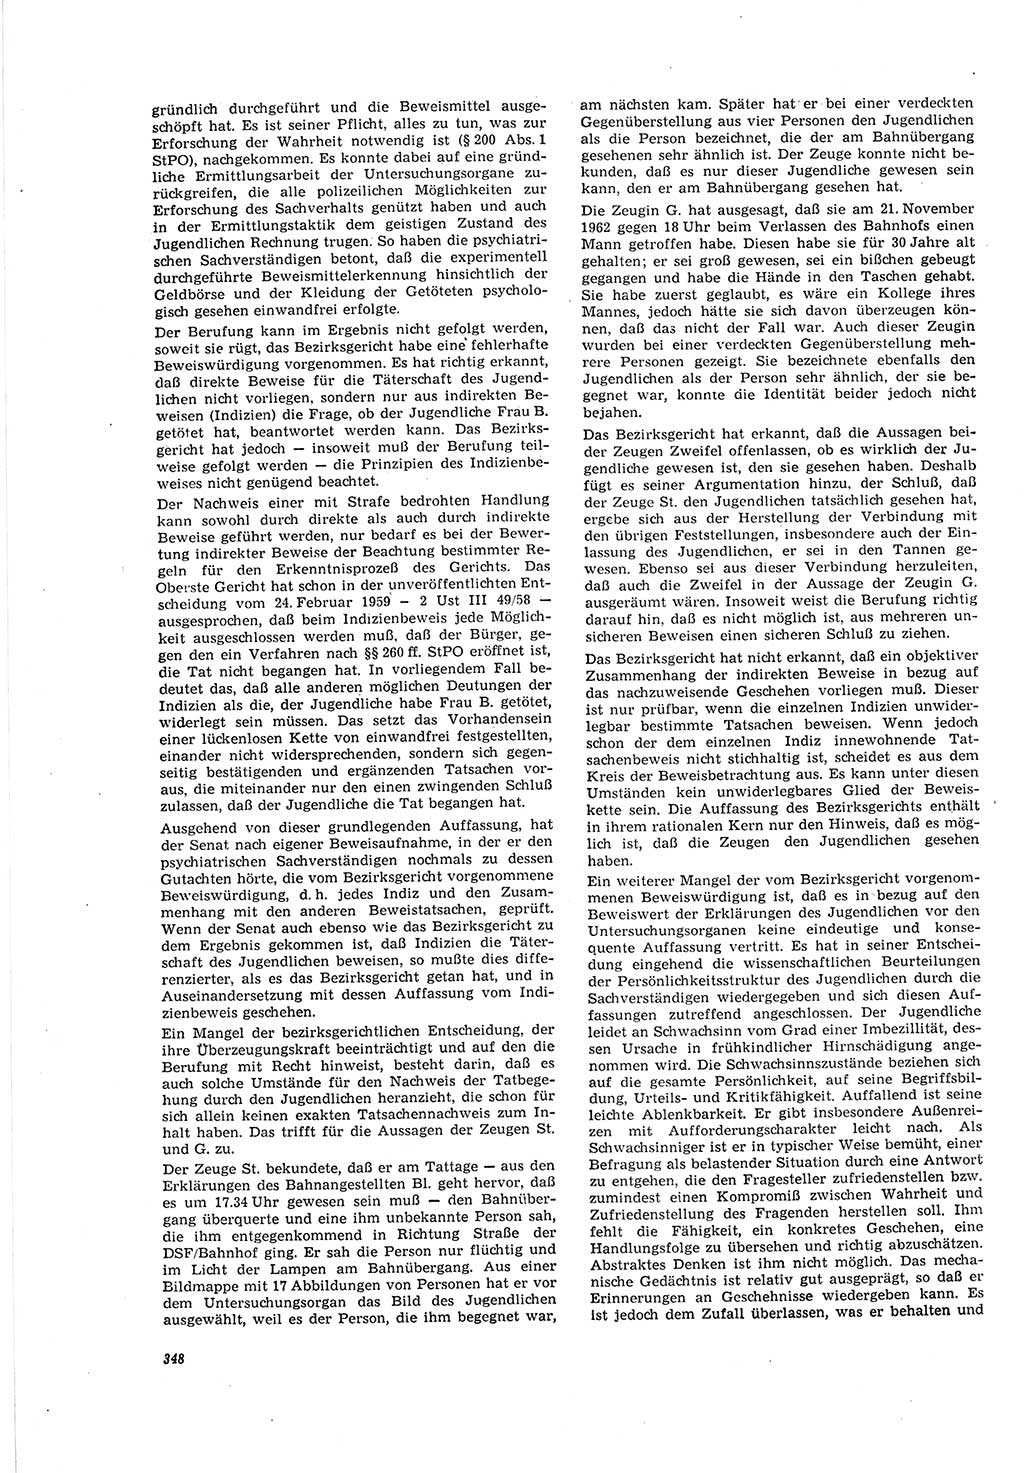 Neue Justiz (NJ), Zeitschrift für Recht und Rechtswissenschaft [Deutsche Demokratische Republik (DDR)], 20. Jahrgang 1966, Seite 348 (NJ DDR 1966, S. 348)